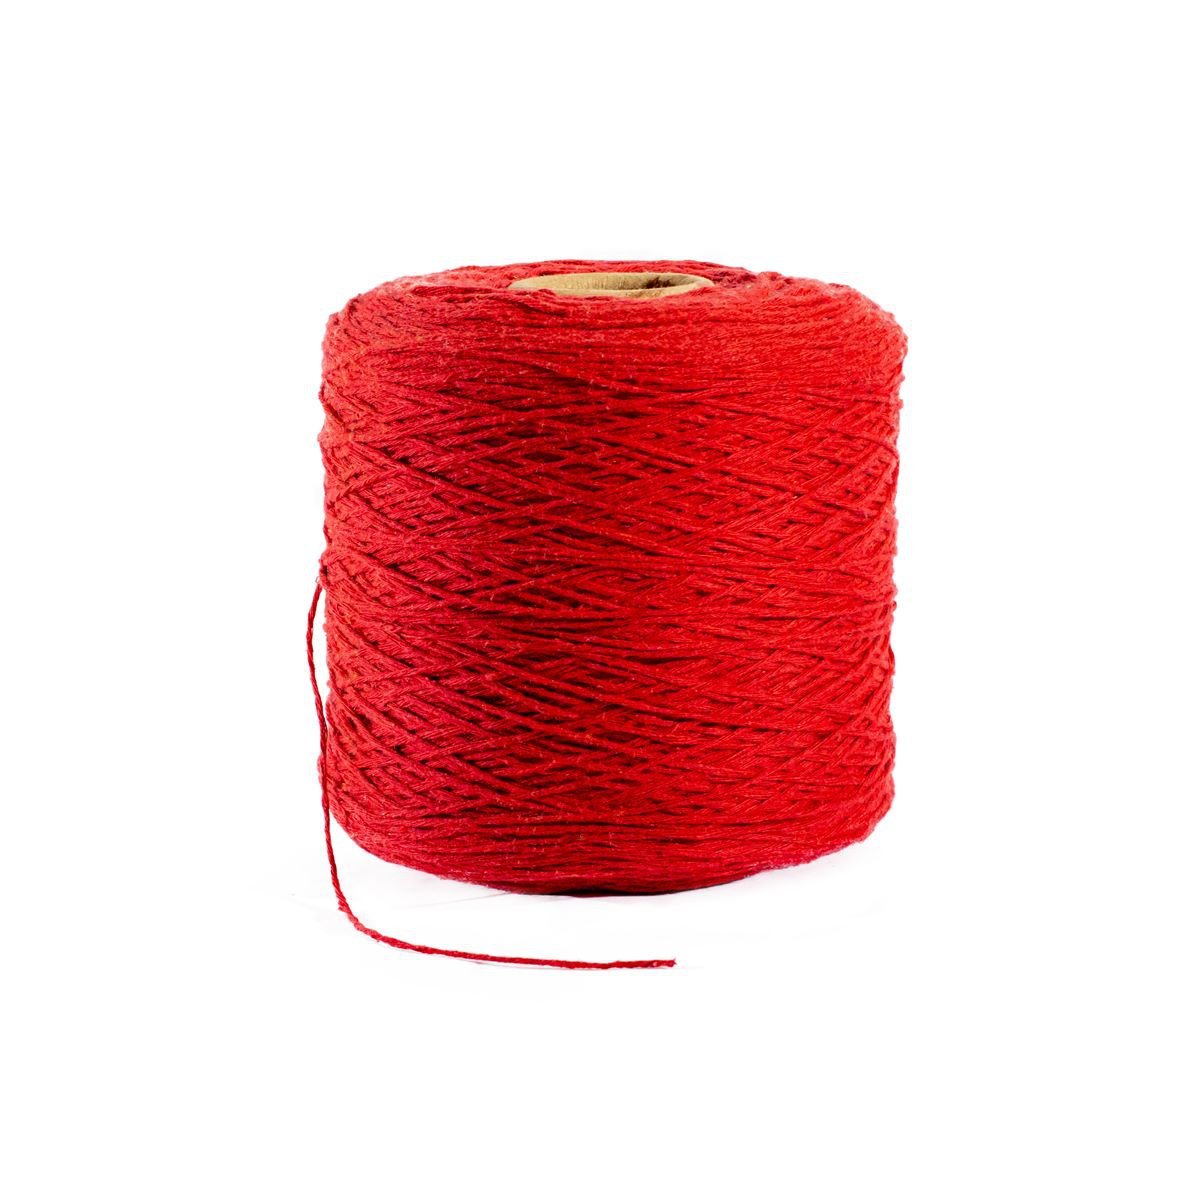 Barbante ou Linha para Crochê Colorido Nº 8 - Vermelho - 1